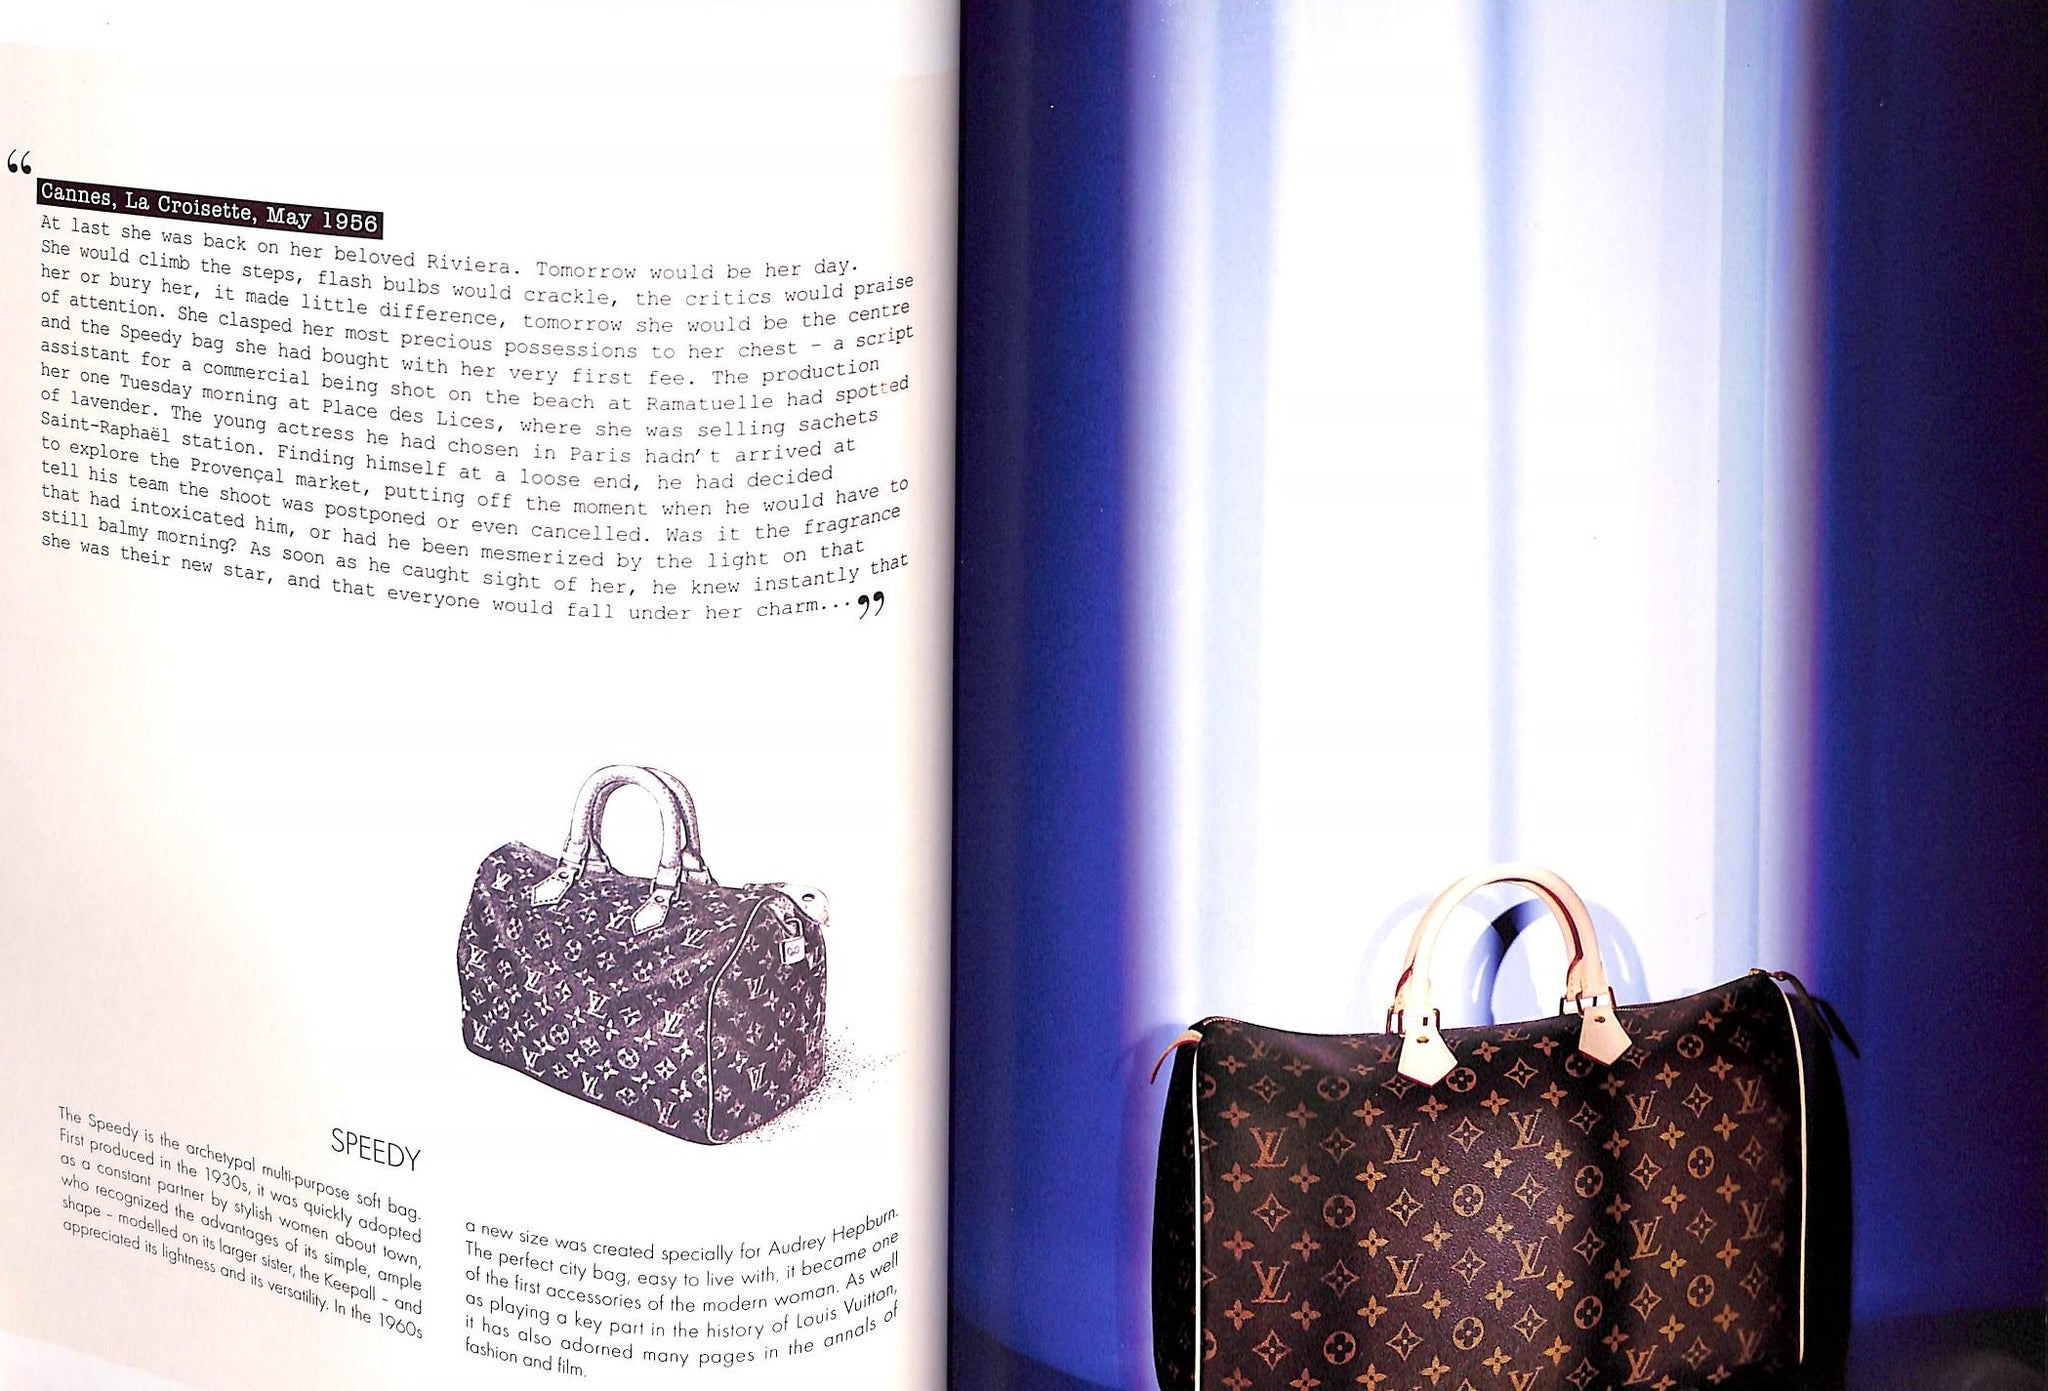 Louis Vuitton Le Catalogue Book Purse Suitcase